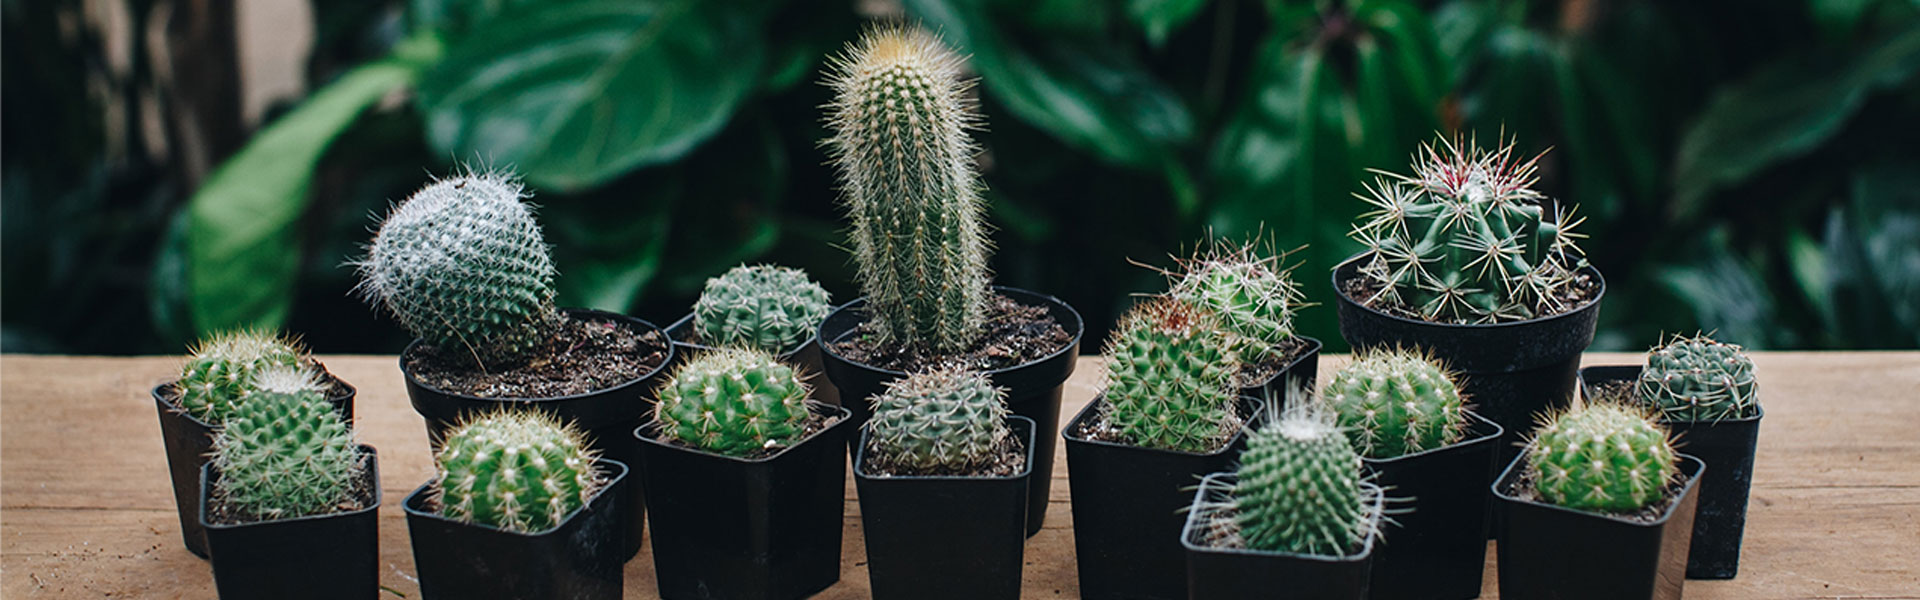 Nurture Your Nature: Cacti